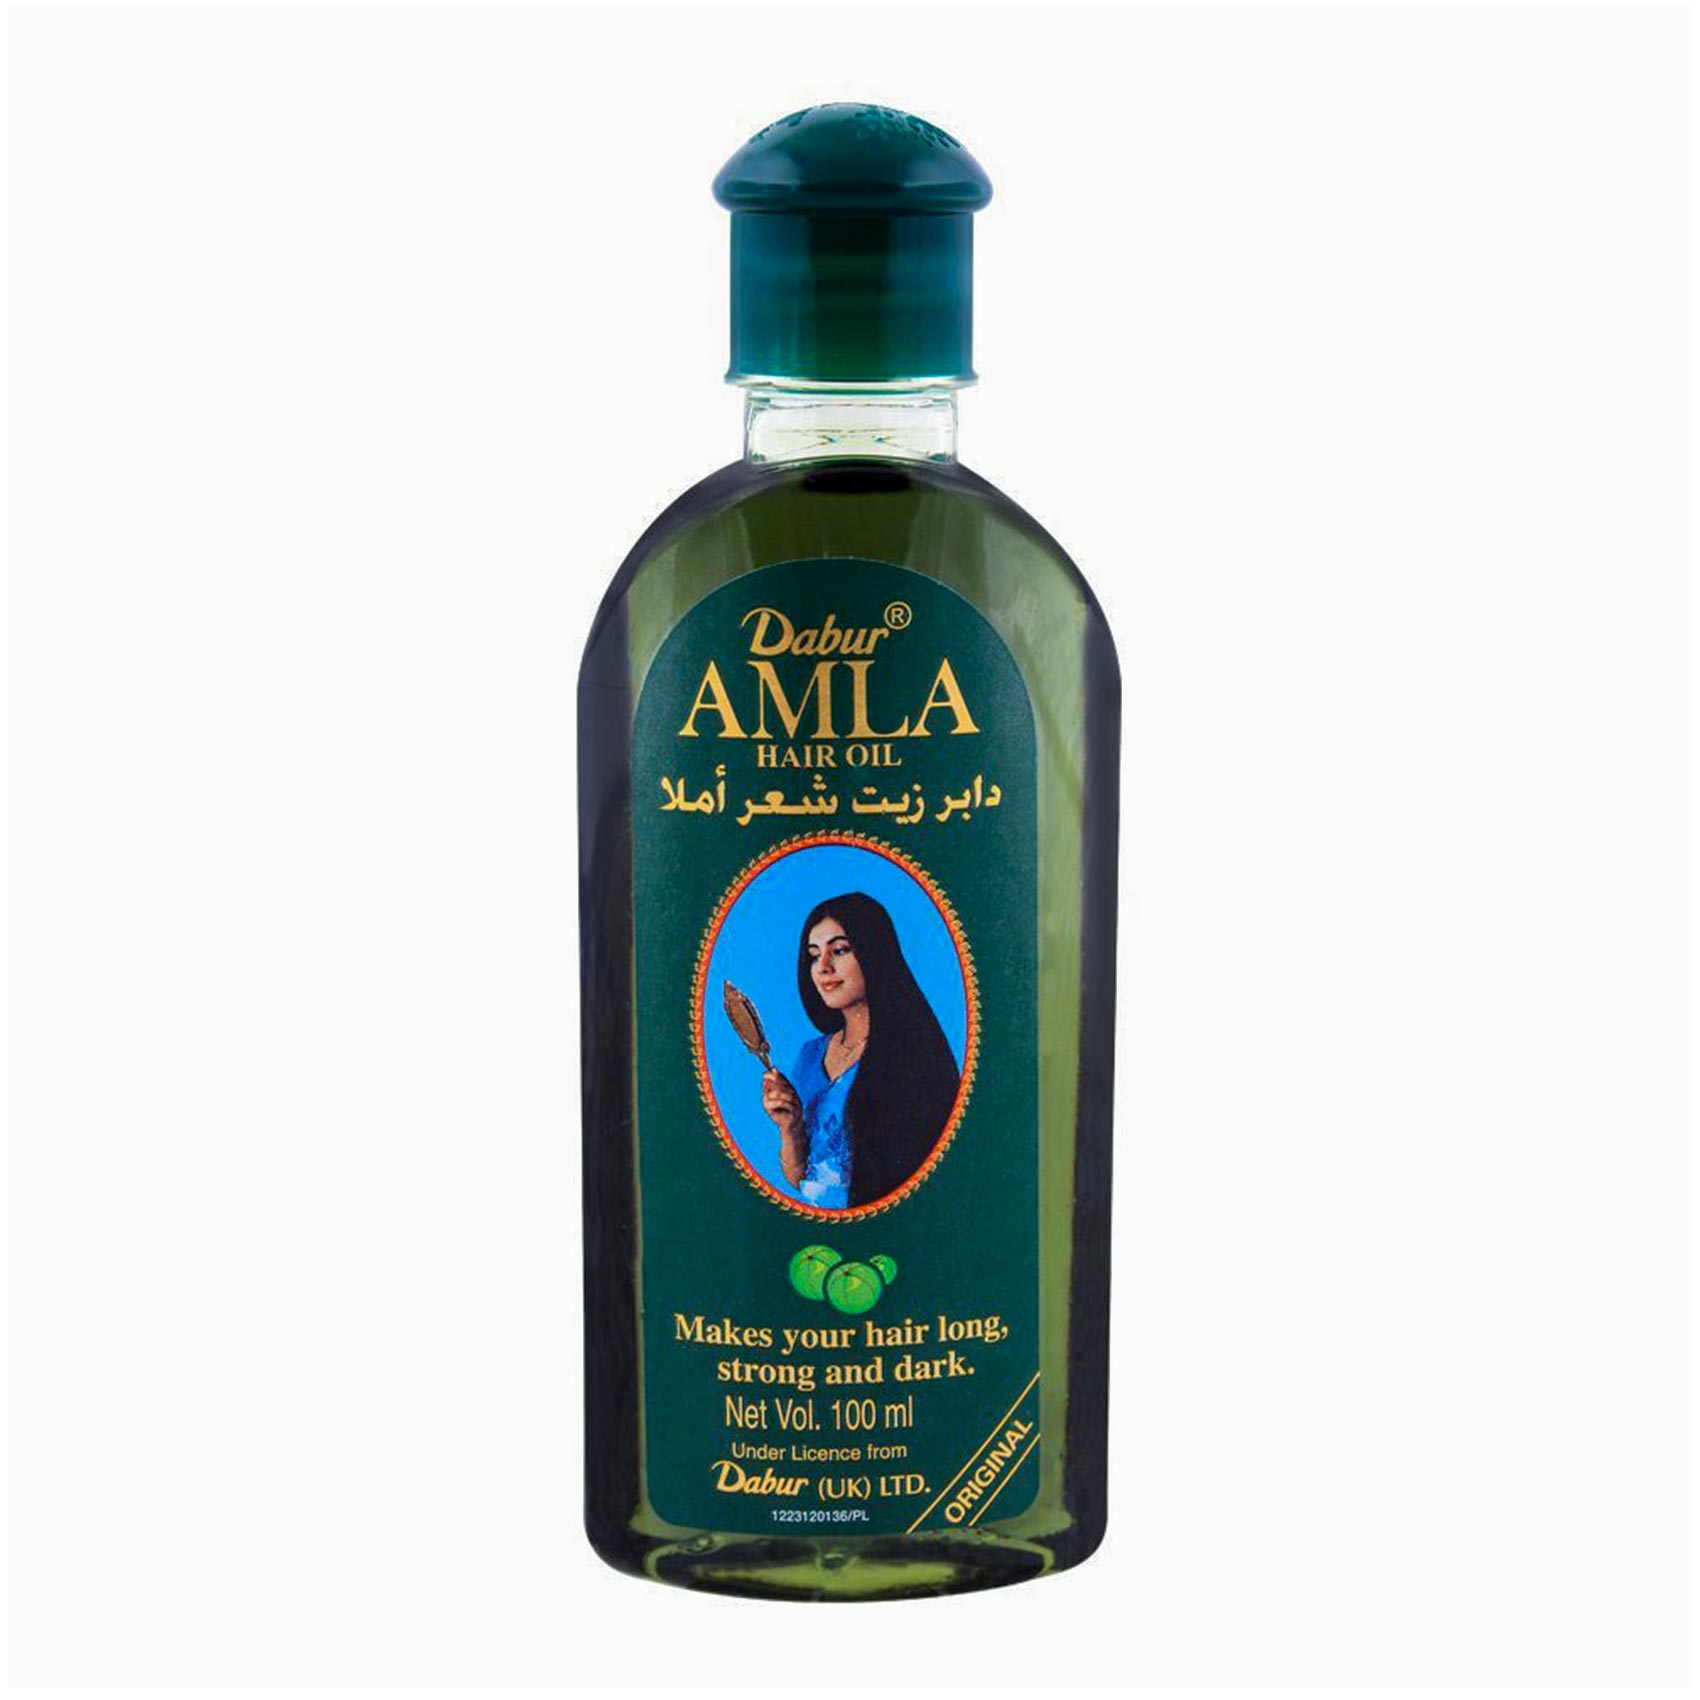 Dabur Amla Hair Oil Reviews 2023